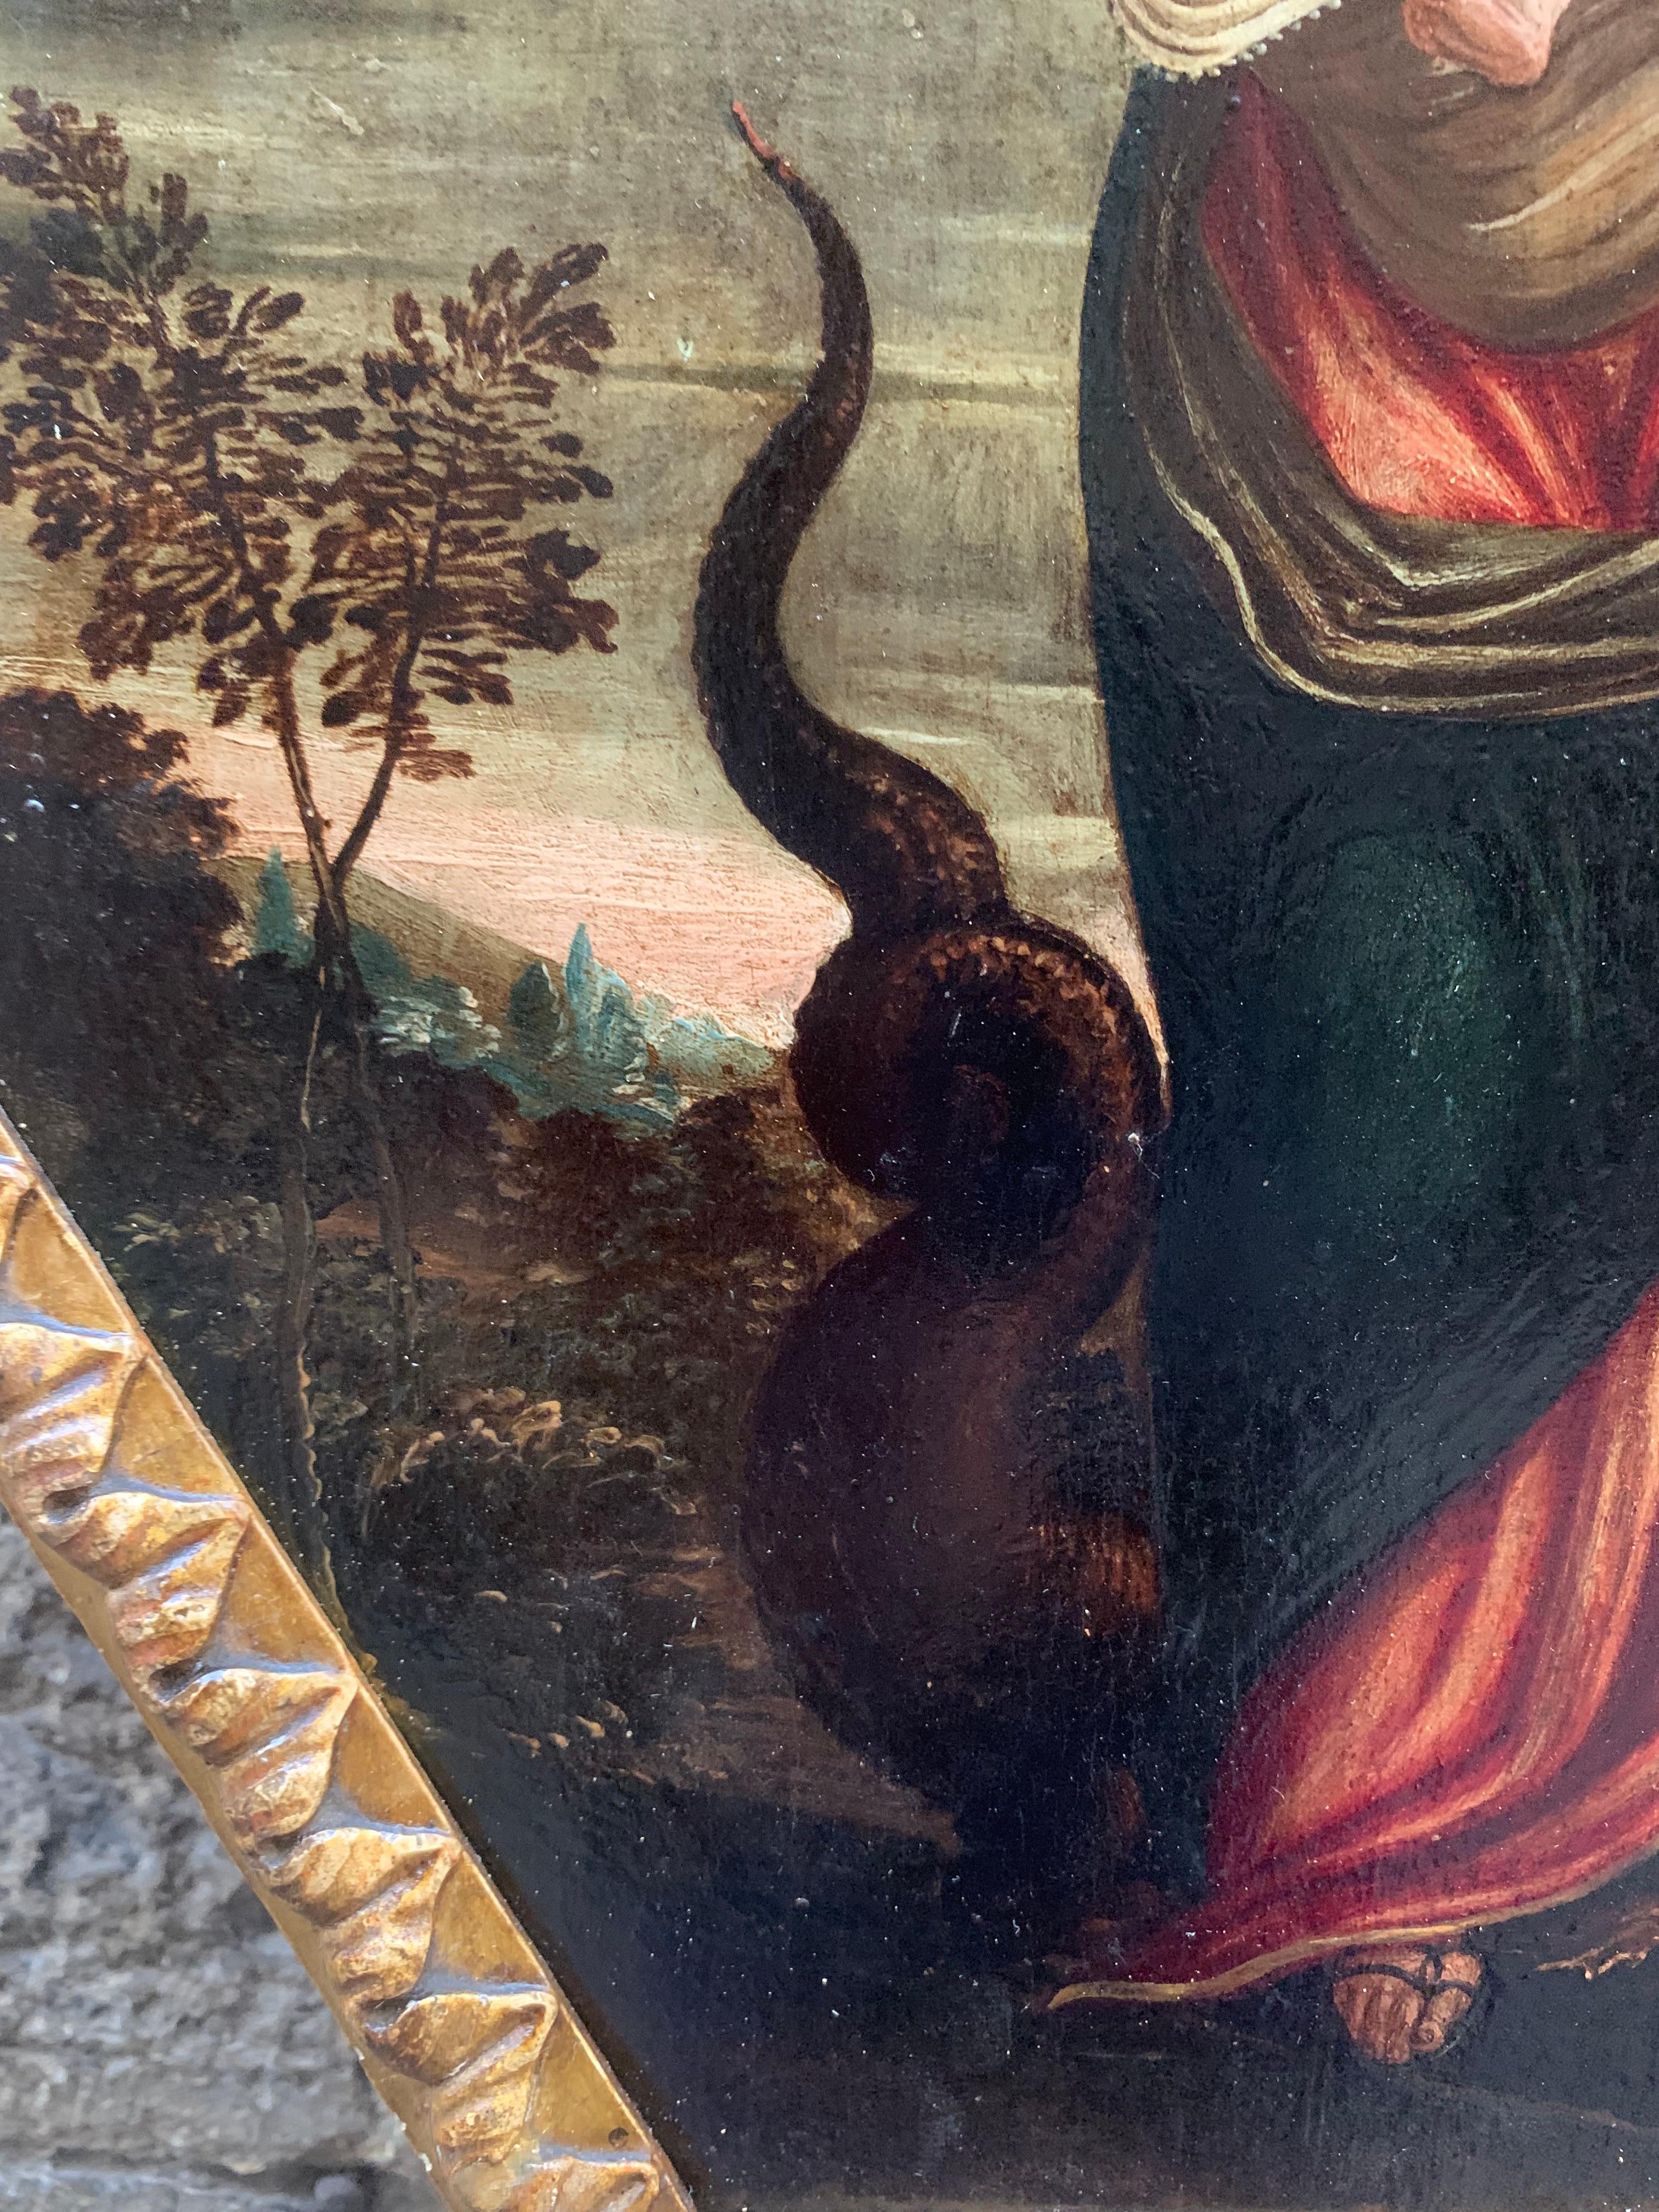 Ende des 16. Jahrhunderts. Unbefleckte Empfängnis. Jungfrau mit Kind und Drache. – Painting von Unknown